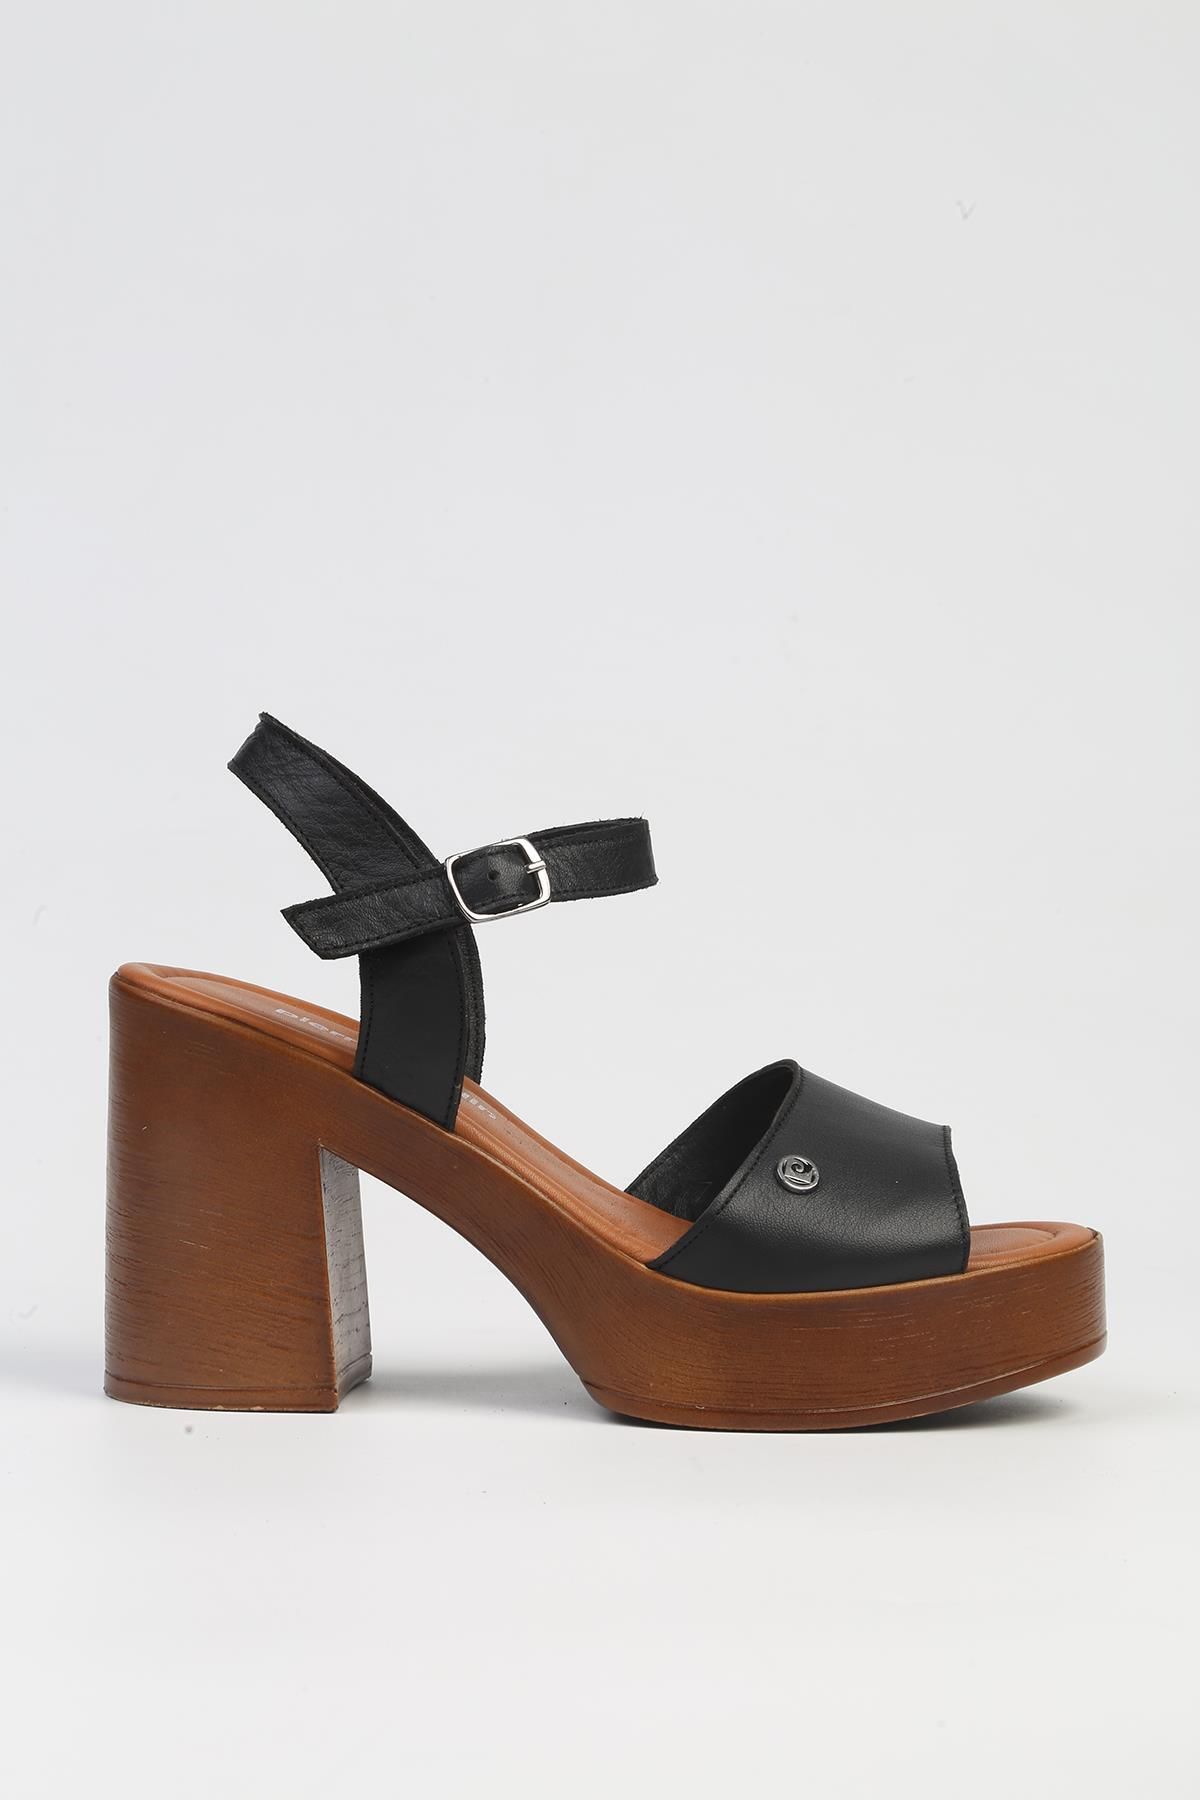 Pierre Cardin ® | PC-7229 - 3807 Siyah-Kadın Topuklu Ayakkabı